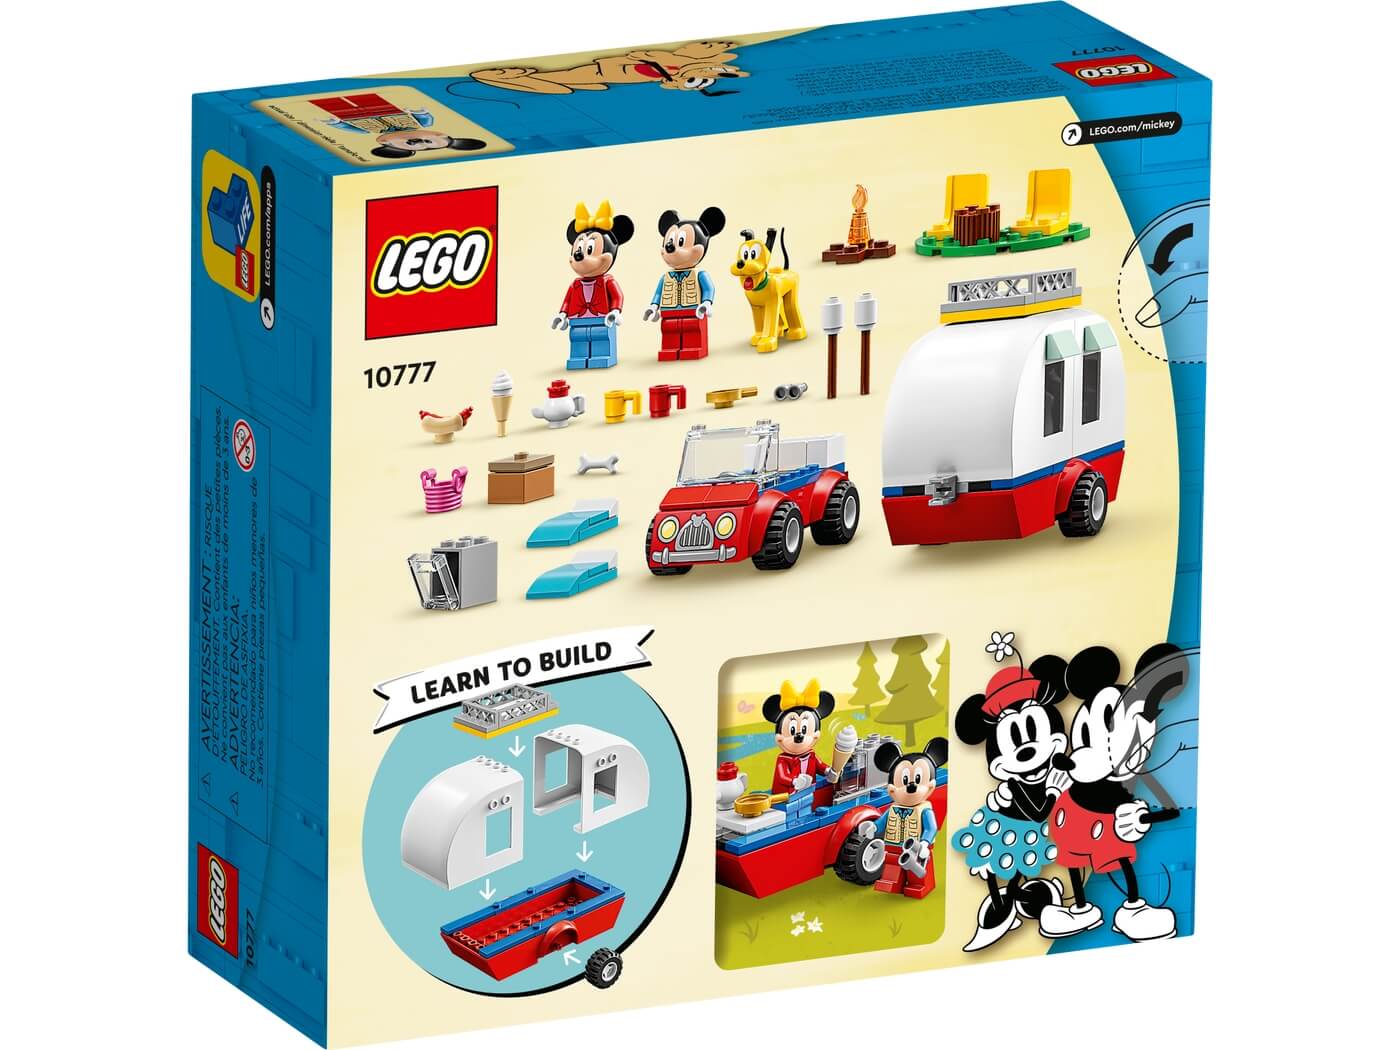 Excursion de Campo de Mickey Mouse y Minnie ( Lego 10777 ) imagen f